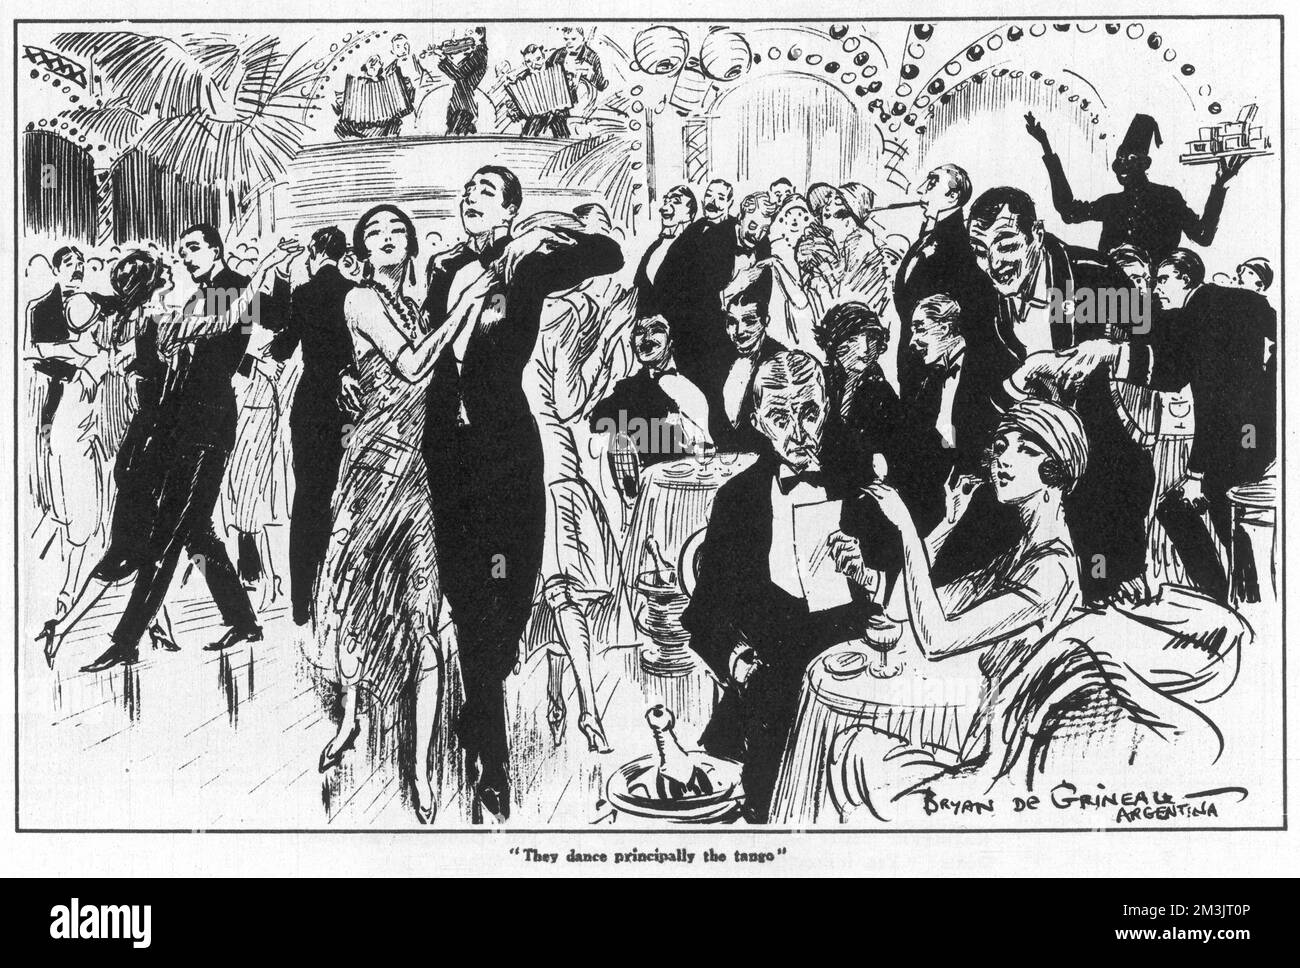 Vita notturna a Buenos Aires, Argentina. In un club, i ballerini ballano il tango mentre gli onlookers si siedono ai tavoli seguiti dai camerieri. Data: 1925 Foto Stock